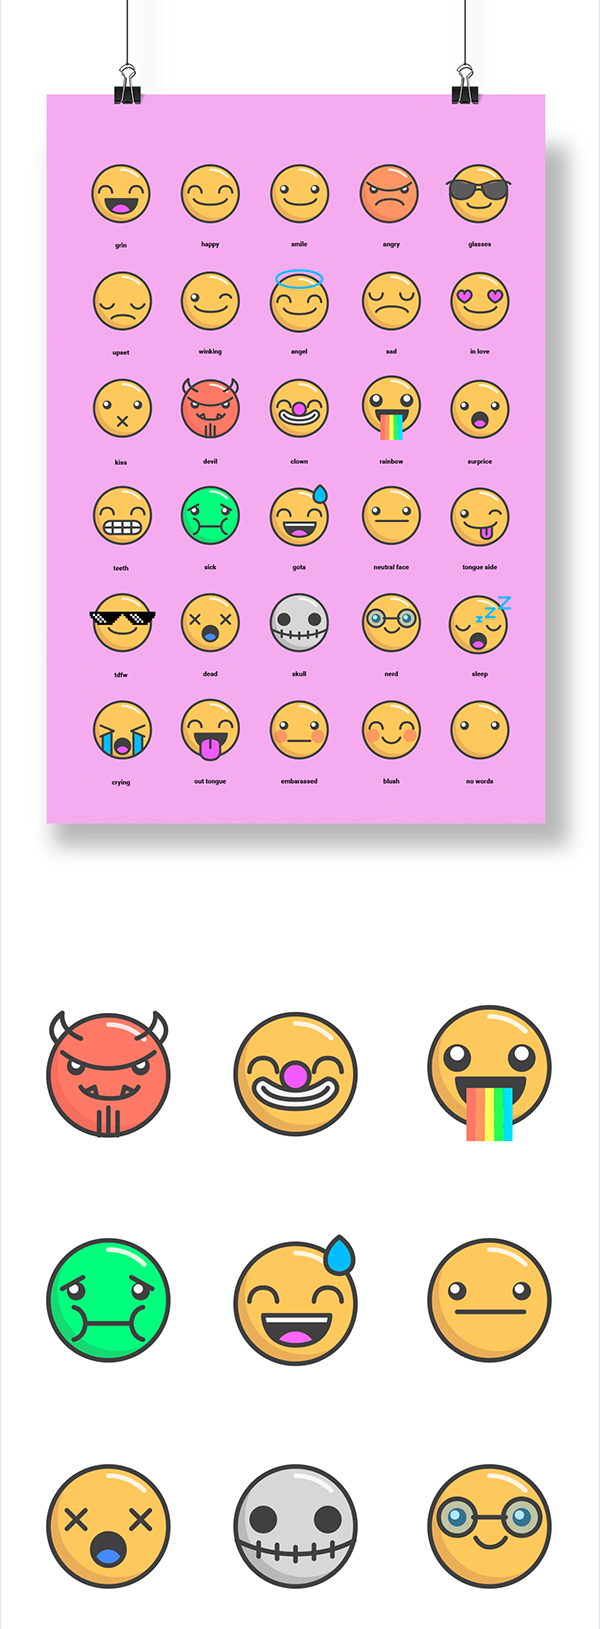 90 Free Emoji Icons